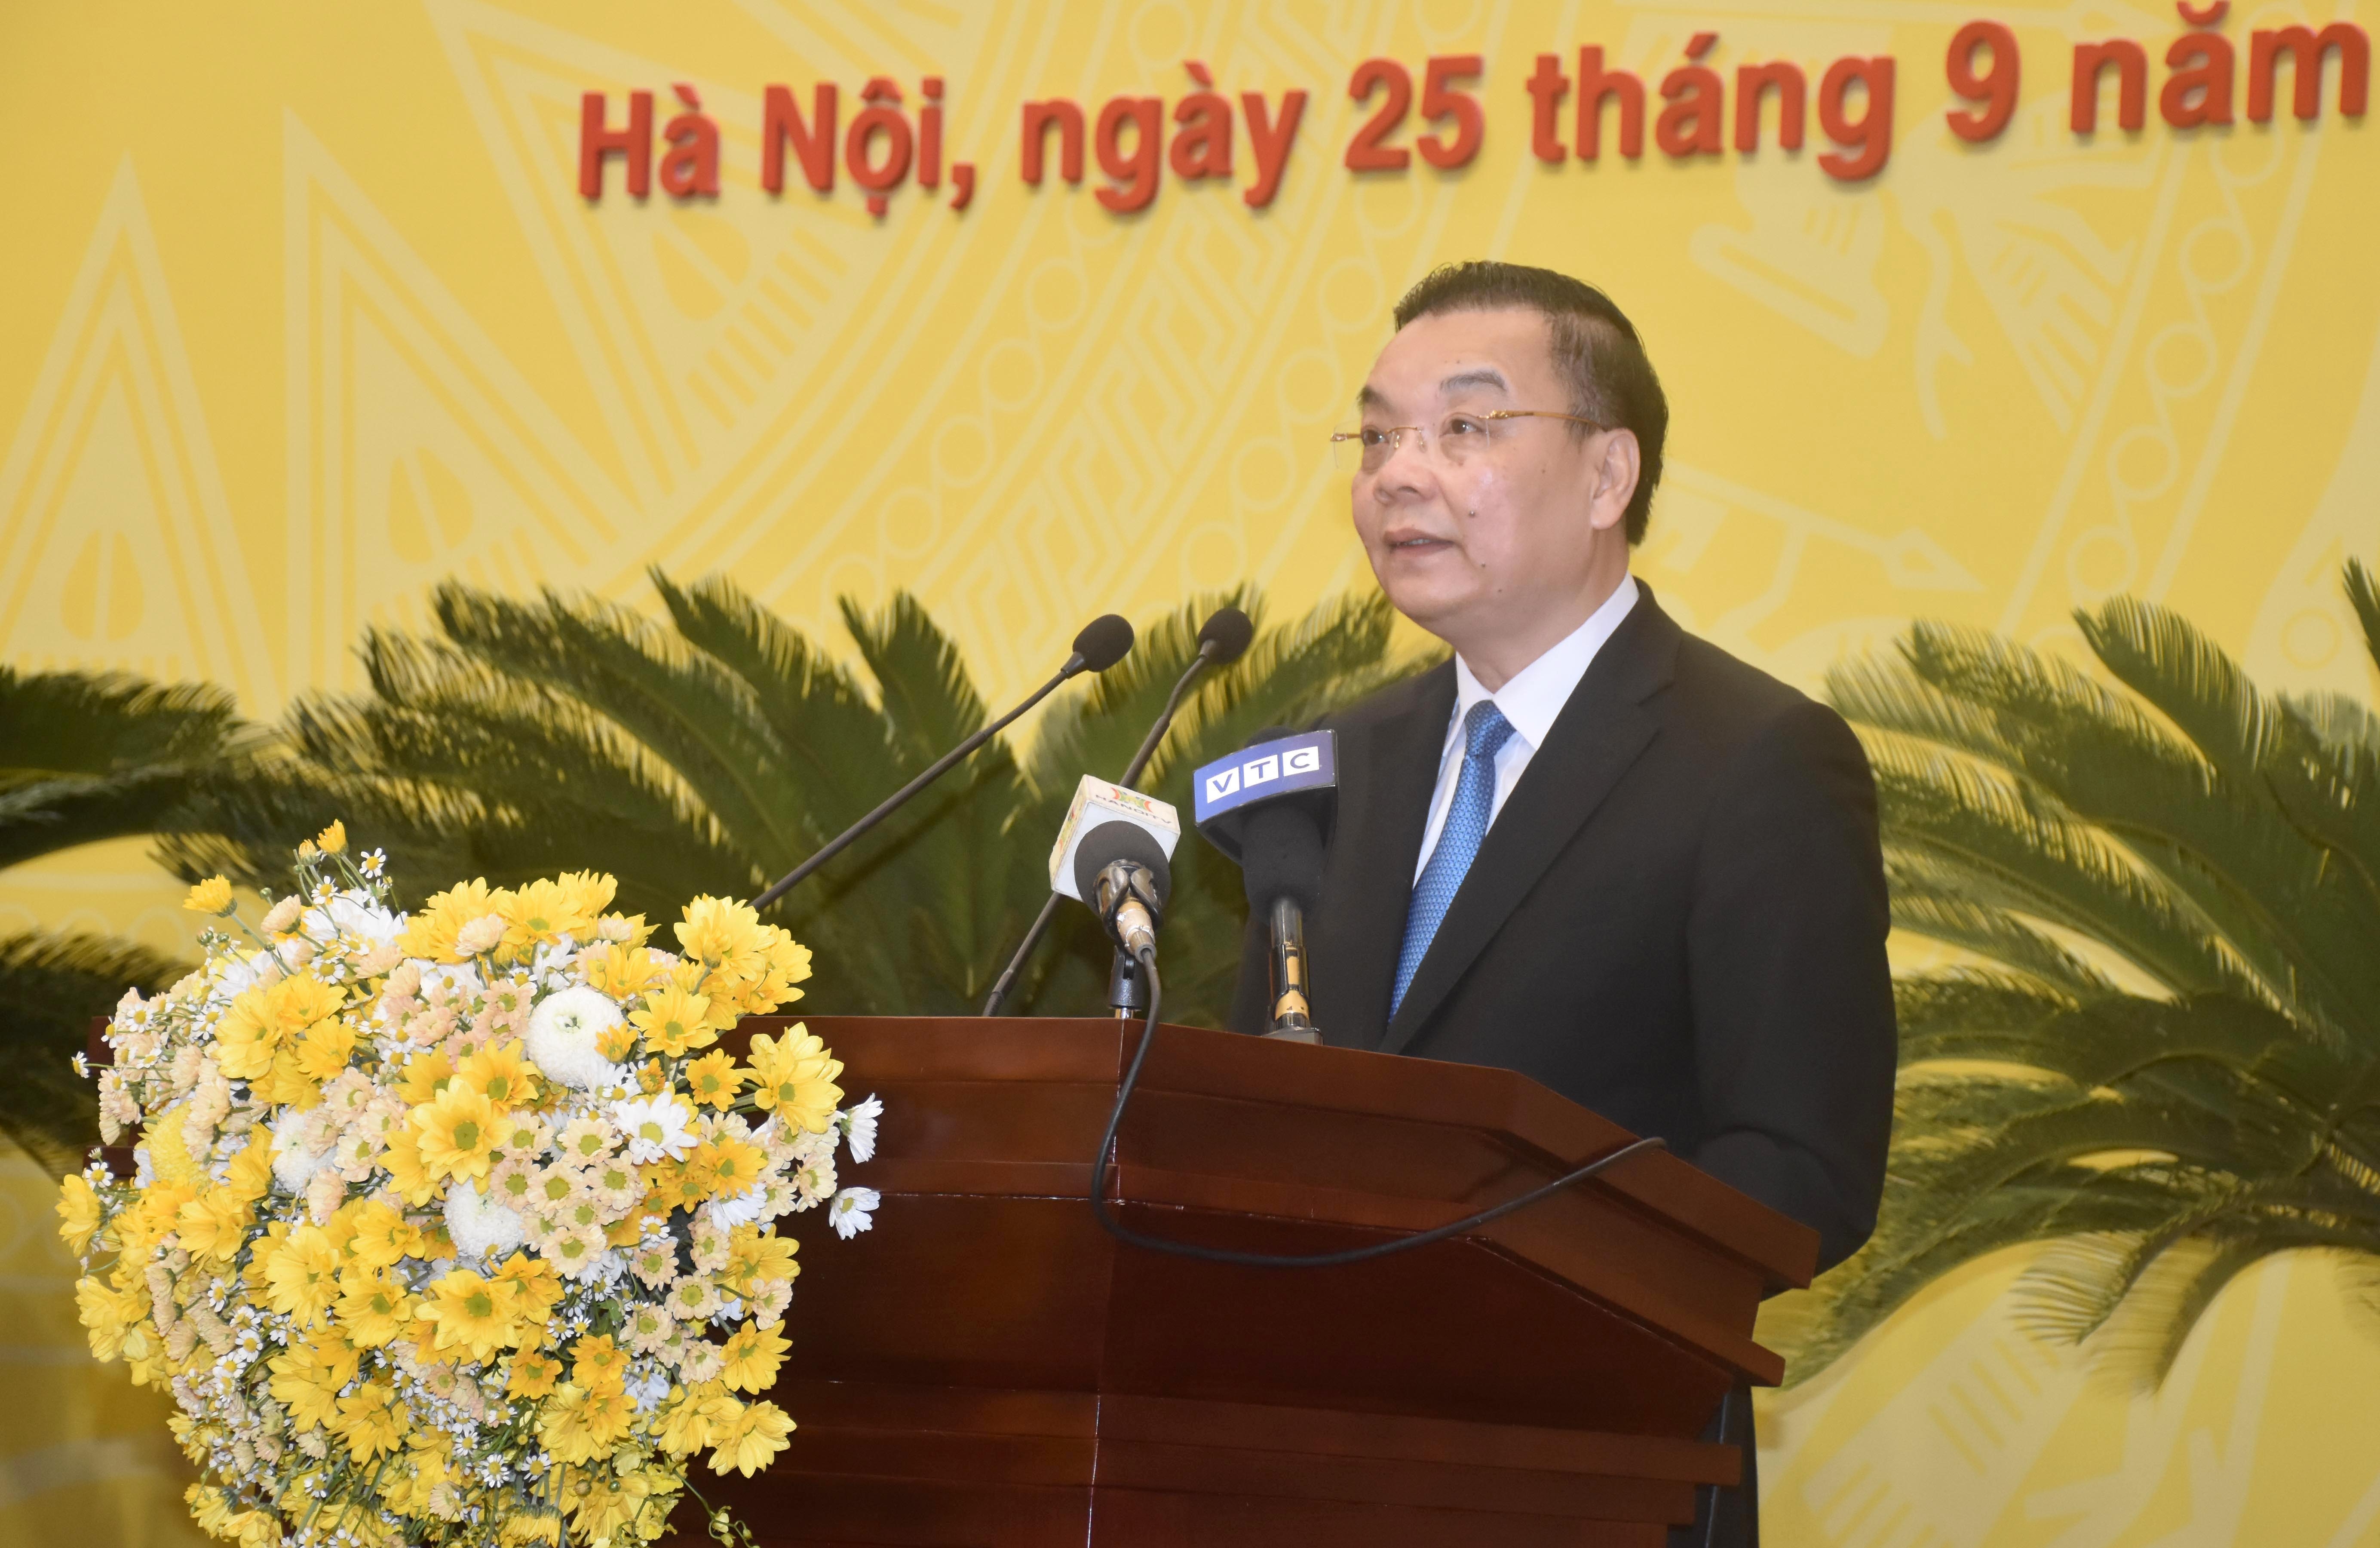 Đồng chí Chu Ngọc Anh được bầu làm Chủ tịch Ủy ban Nhân dân thành phố Hà Nội